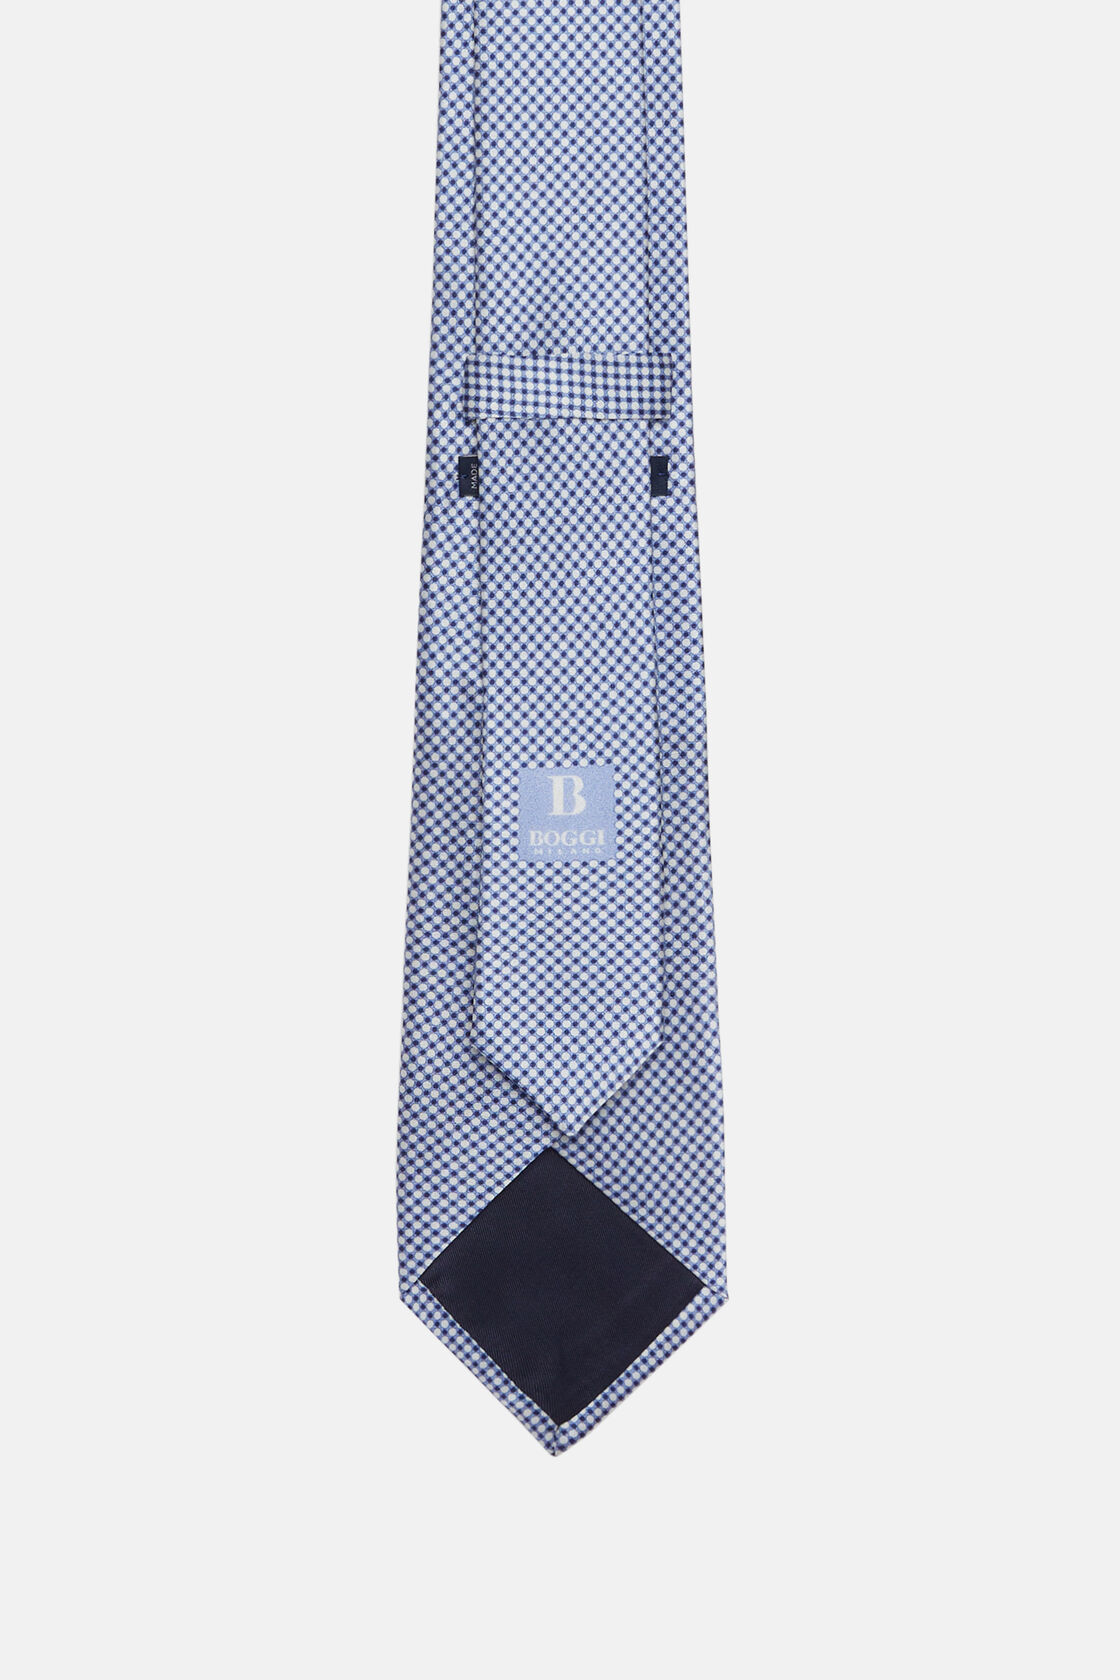 Cravate De Cérémonie Imprimée En Soie, Bleu clair, hi-res